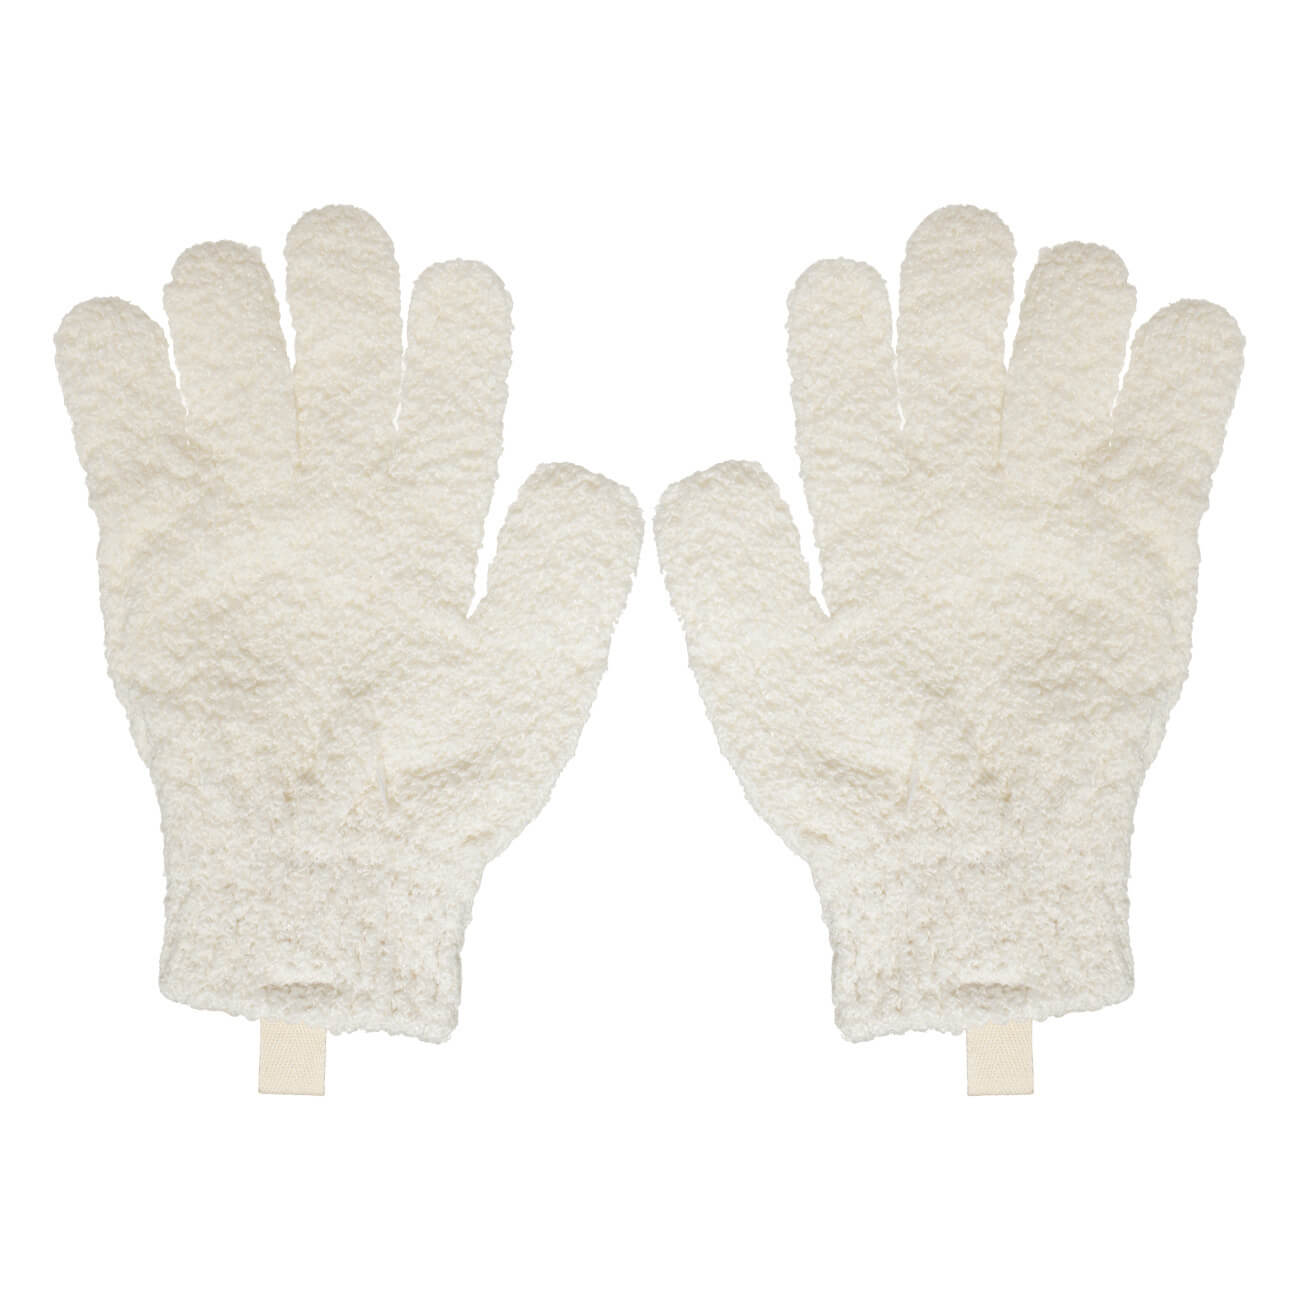 Перчатка для мытья тела, 21 см, 2 шт, отшелушивающая, полиэстер, молочная, Unique spa изображение № 1